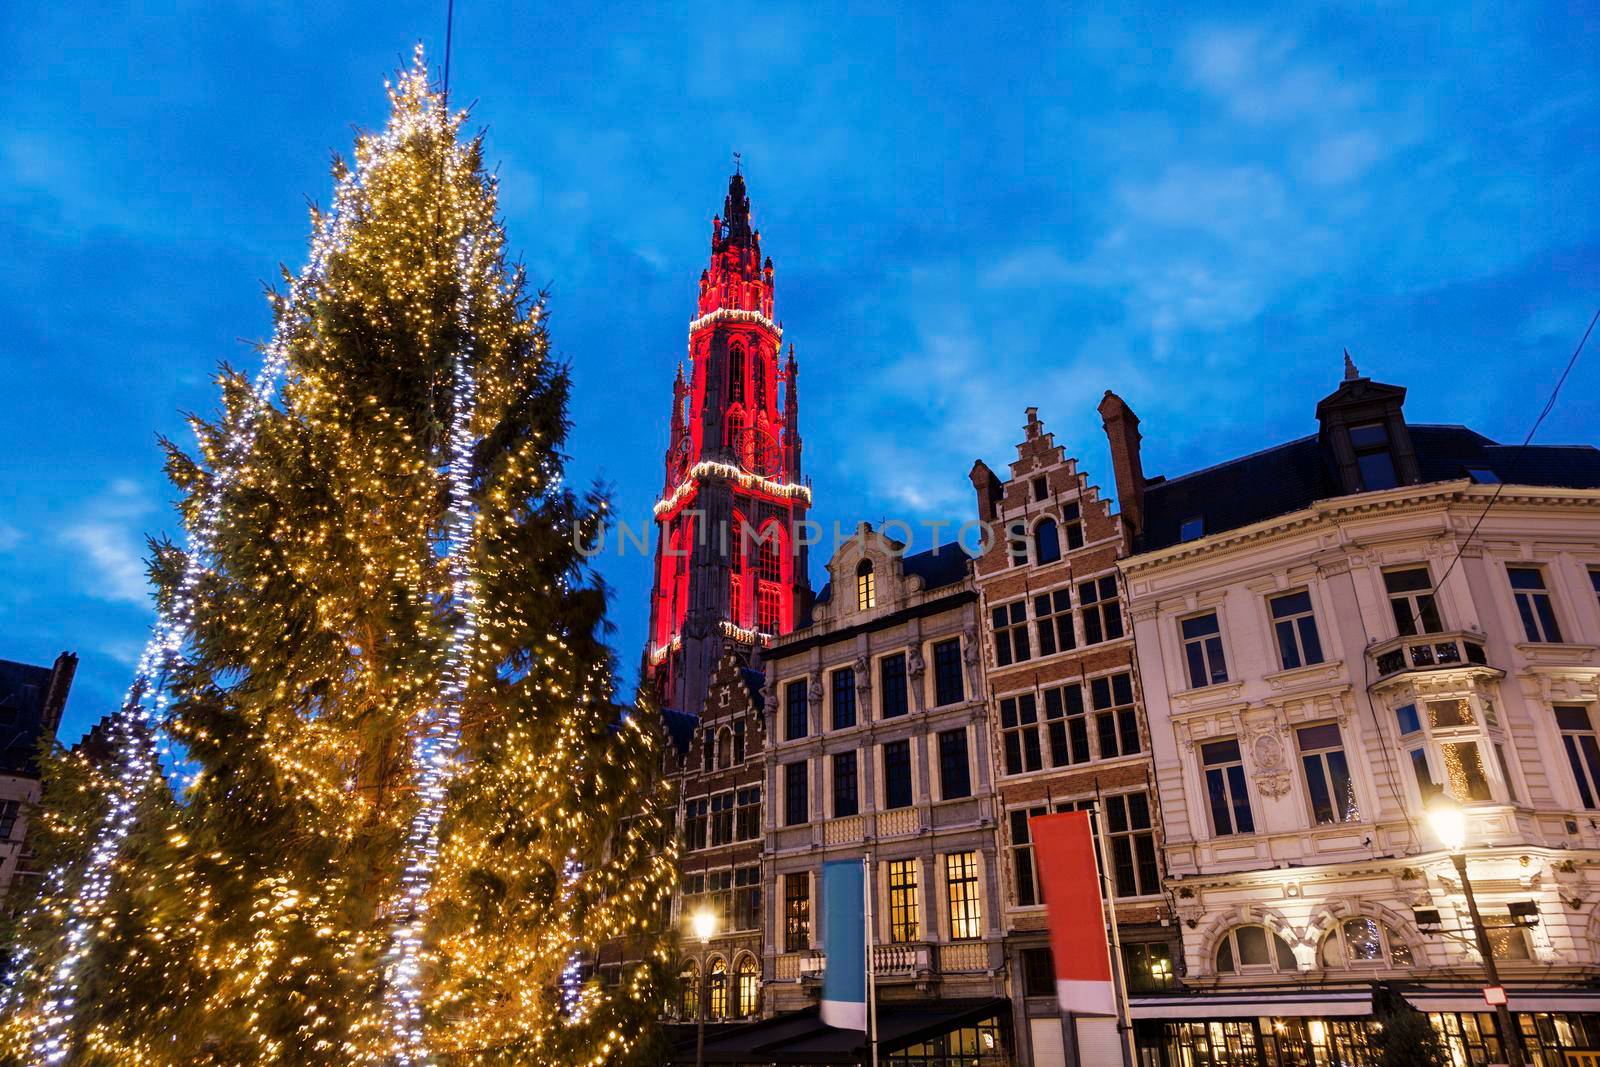 Christmas on Grote Markt in Antwerp by benkrut